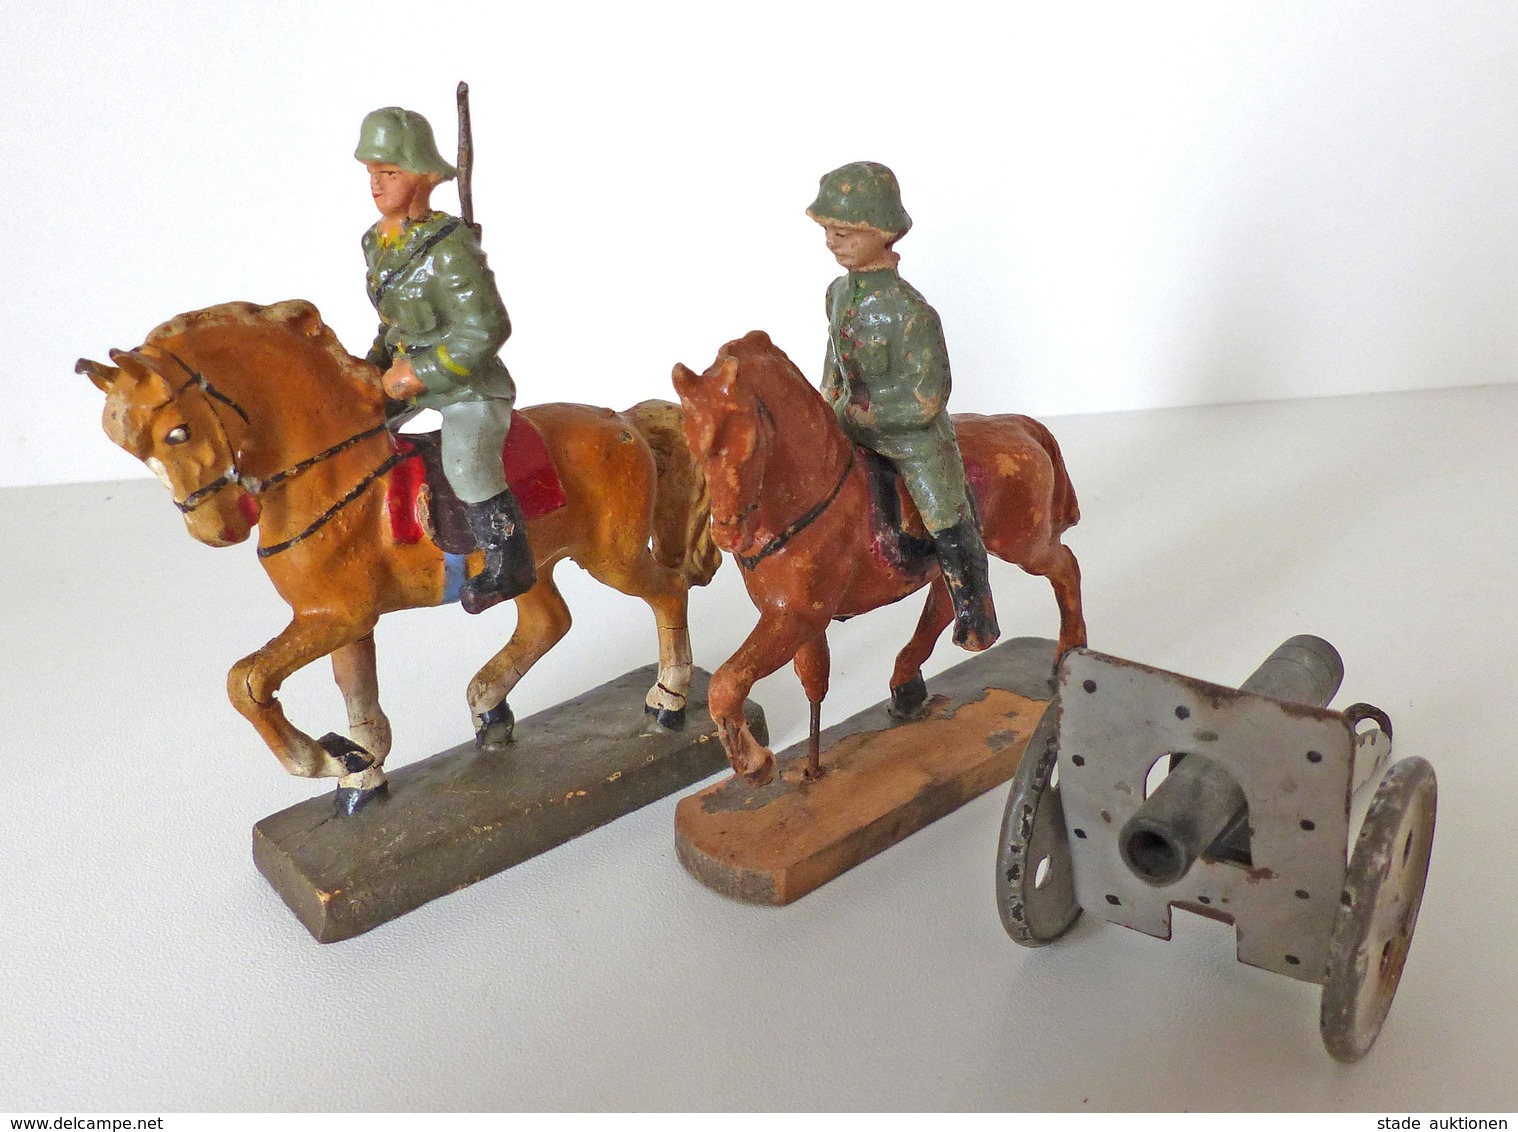 Zwischenkriegszeit Wehrmacht Lineol Figuren Kavalerie 2 Reiter 1 Geschütz Bespielt I-II (altersbedingte Gebrauchsspuren) - Geschichte